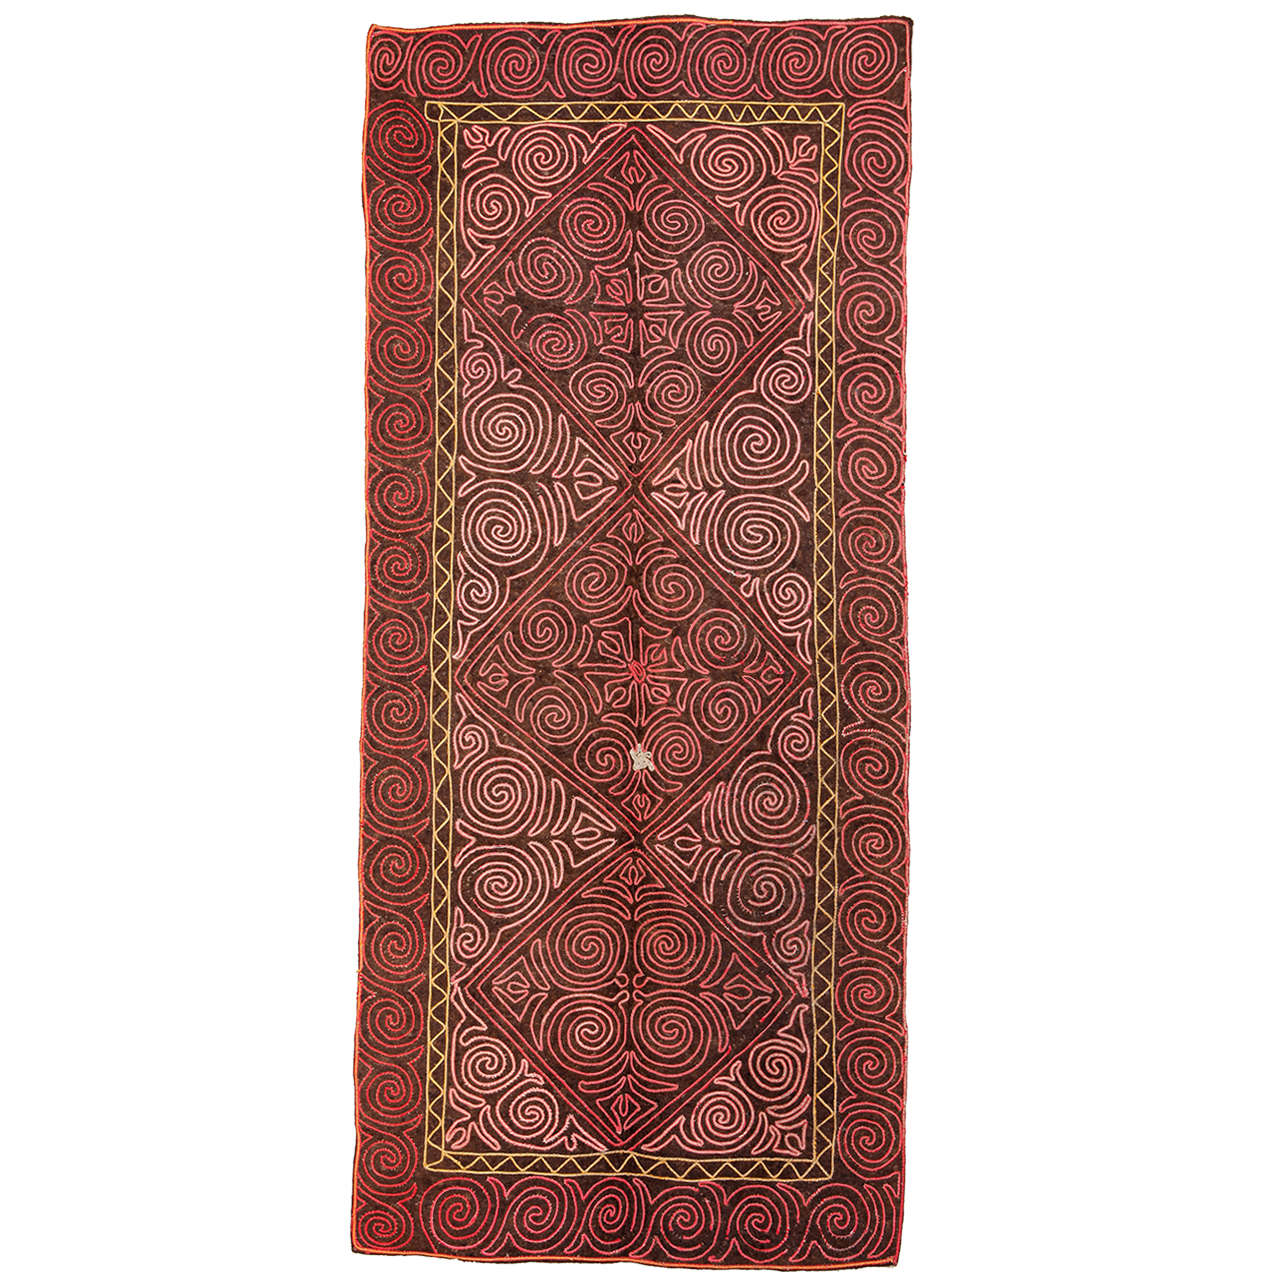 Vintage Embroidered Central Asian Felt Rug For Sale